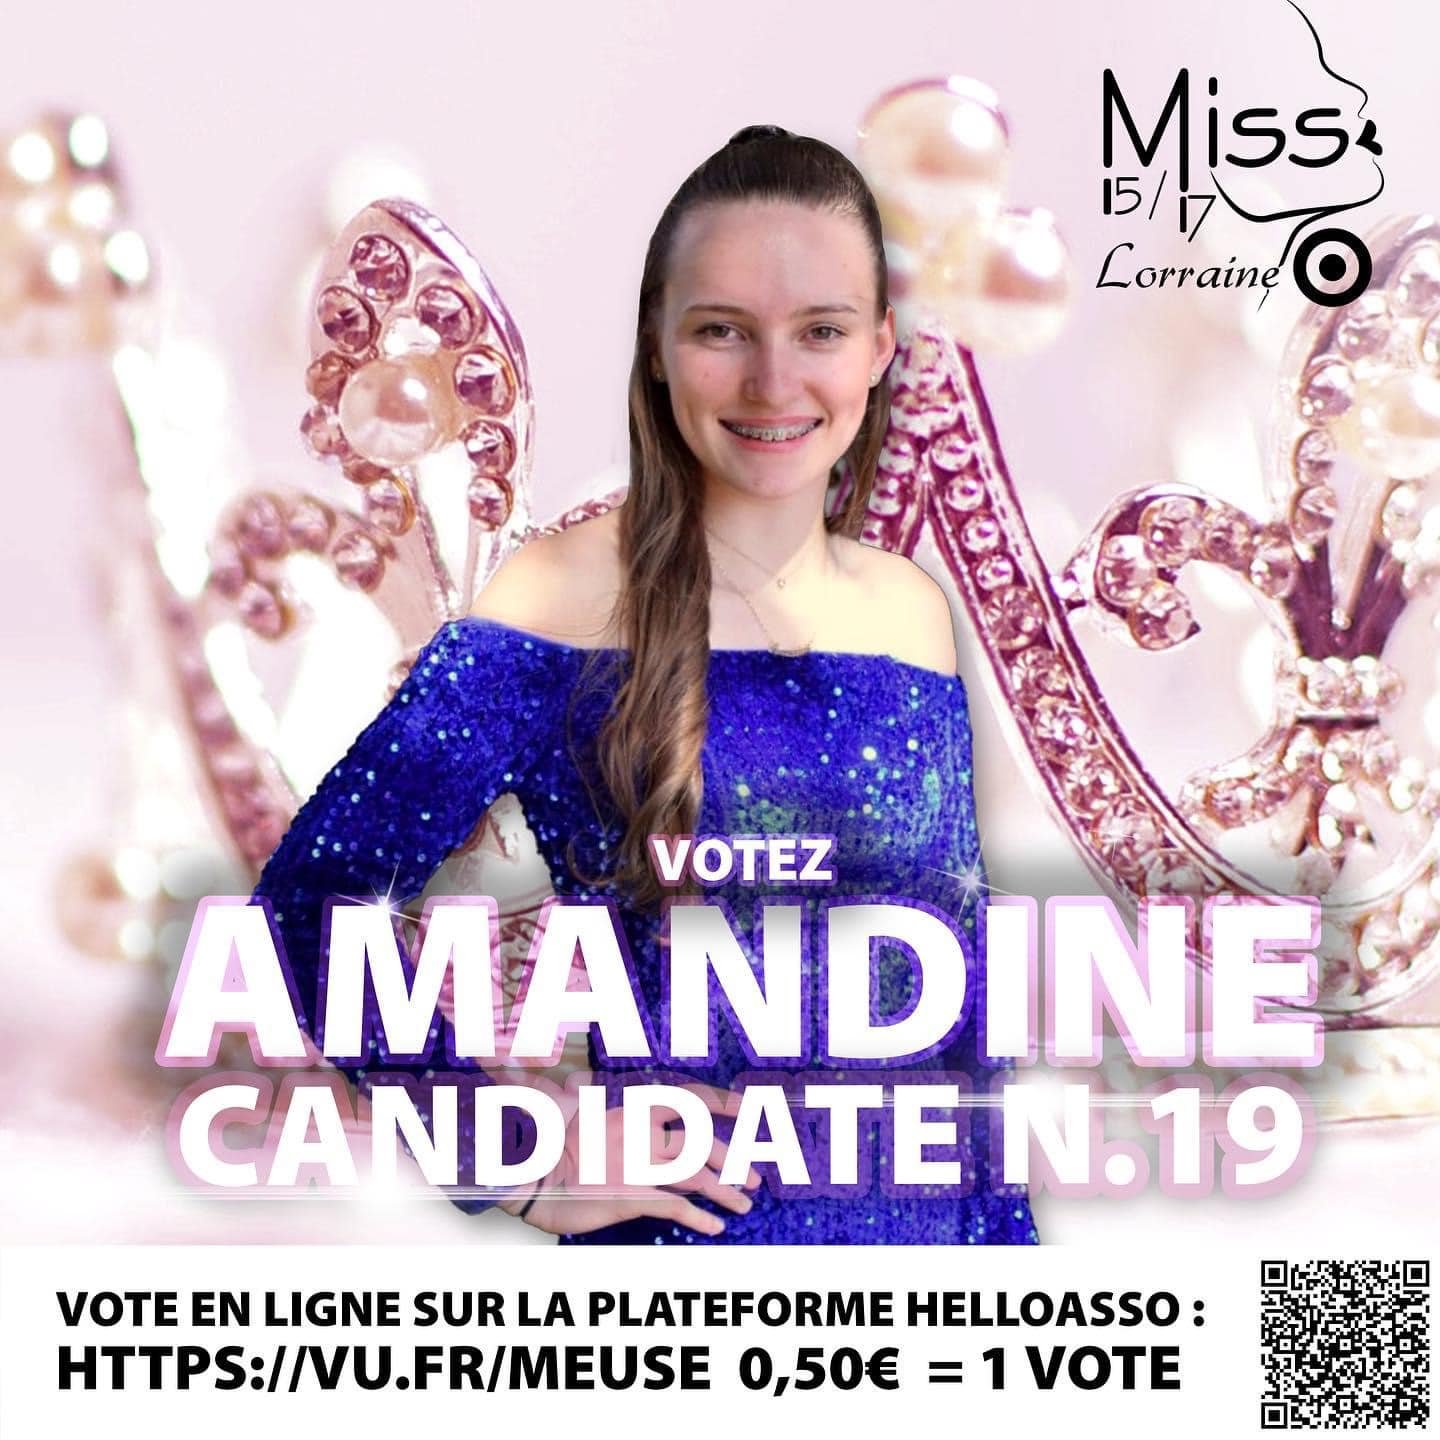 Candidates_Vosgiennes_Miss_15-17_Lorraine (11)